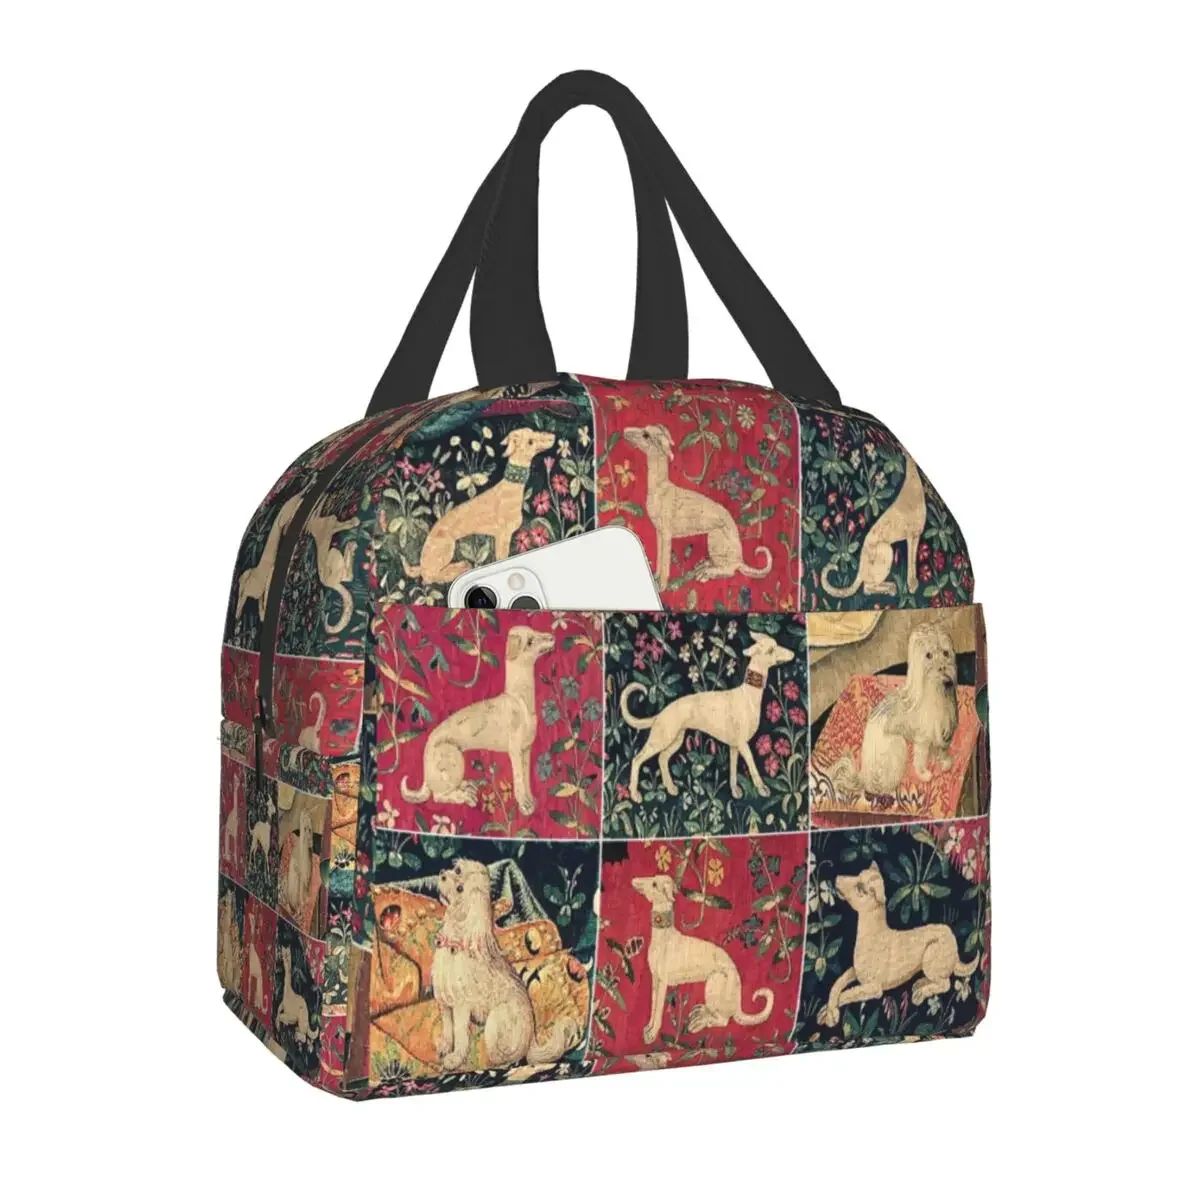 

Средневековые Изолированные сумки для ланча Greyhound для женщин, термальный охладитель для собак с близорукостью, коробка для еды, кемпинга, путешествий